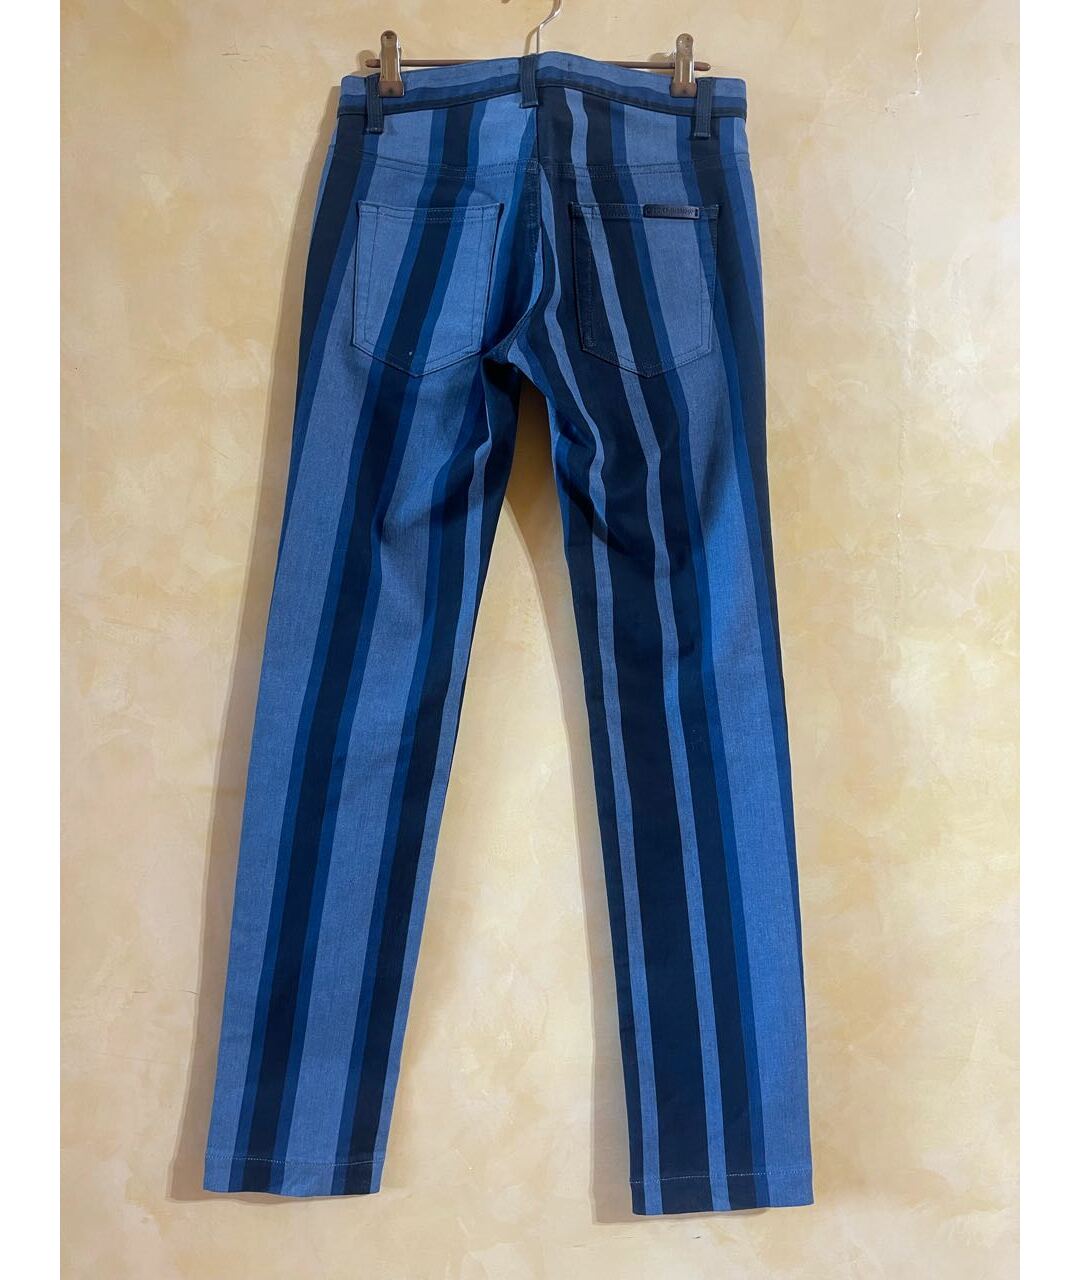 DOLCE&GABBANA Синие хлопковые прямые джинсы, фото 2